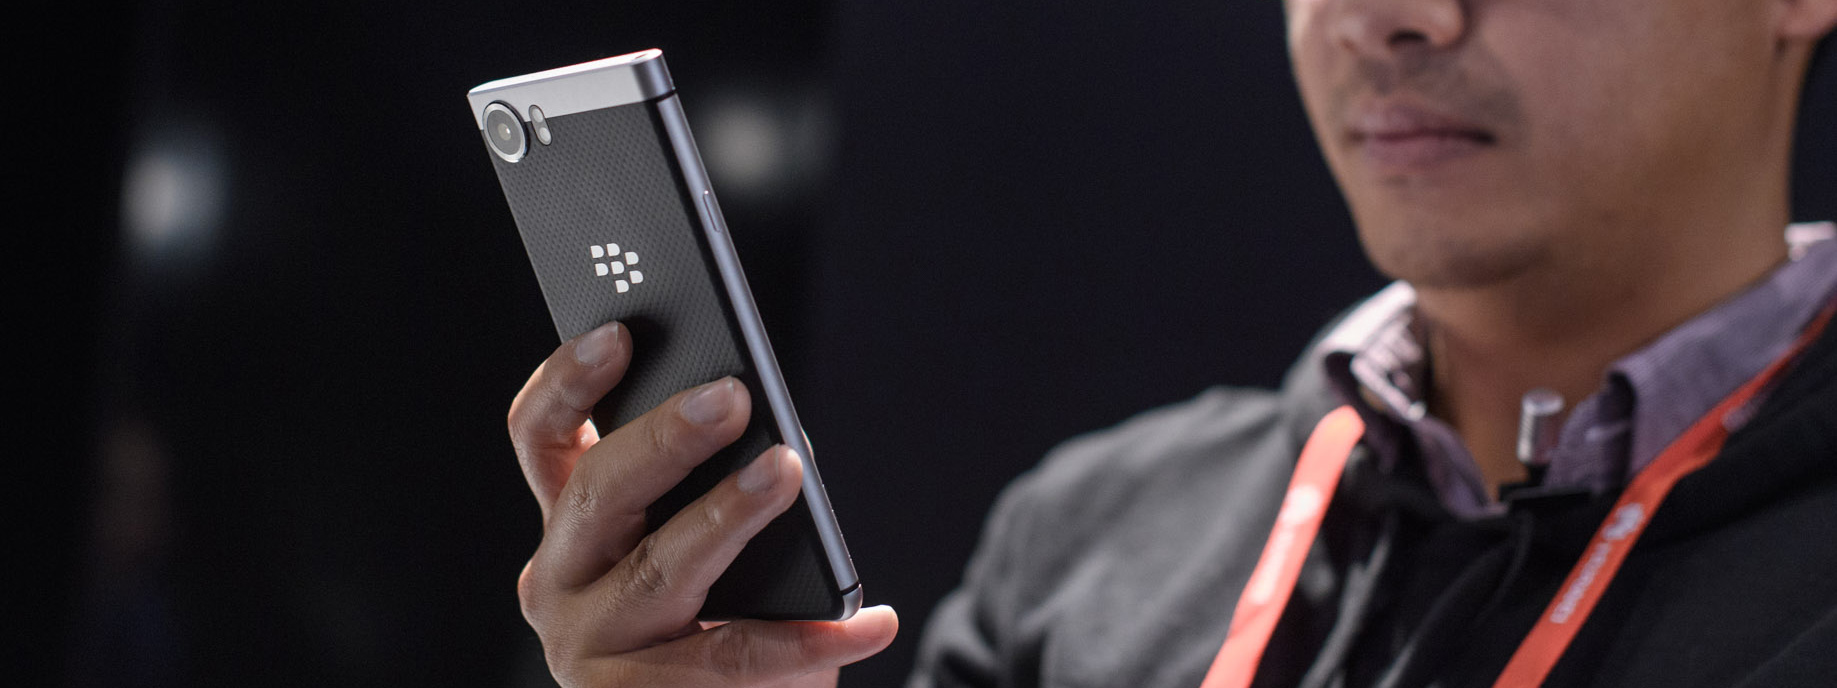 KeyOne là chiếc điện thoại BlackBerry được đặt trước nhiều nhất của nhà mạng Rogers, bạn nghĩ sao?